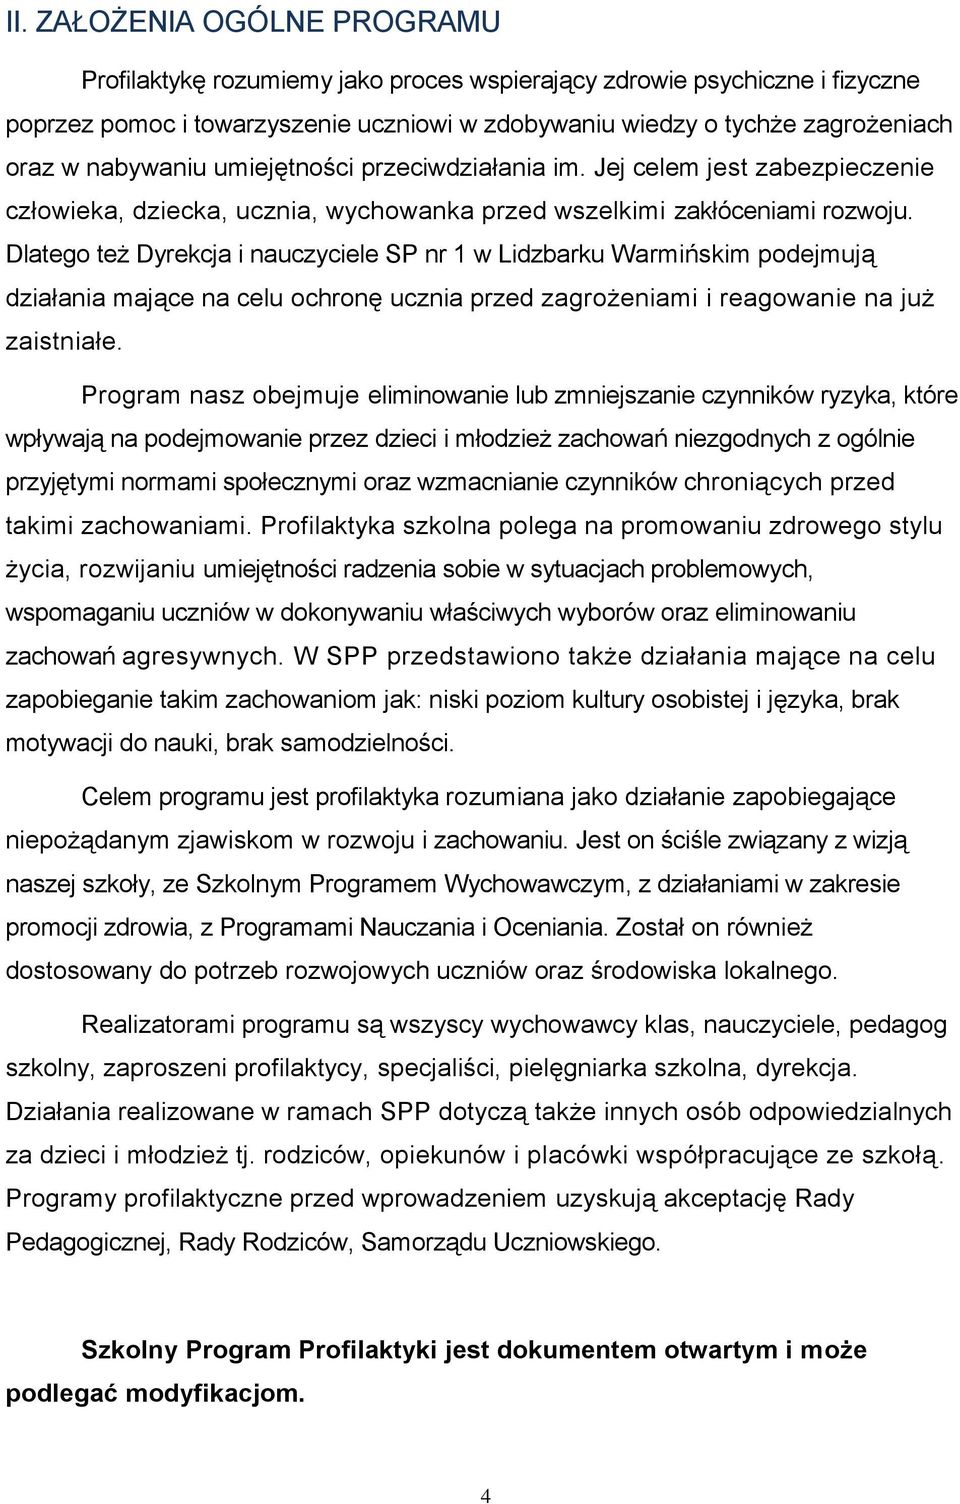 Dlatego też Dyrekcja i nauczyciele SP nr 1 w Lidzbarku Warmińskim podejmują działania mające na celu ochronę ucznia przed zagrożeniami i reagowanie na już zaistniałe.